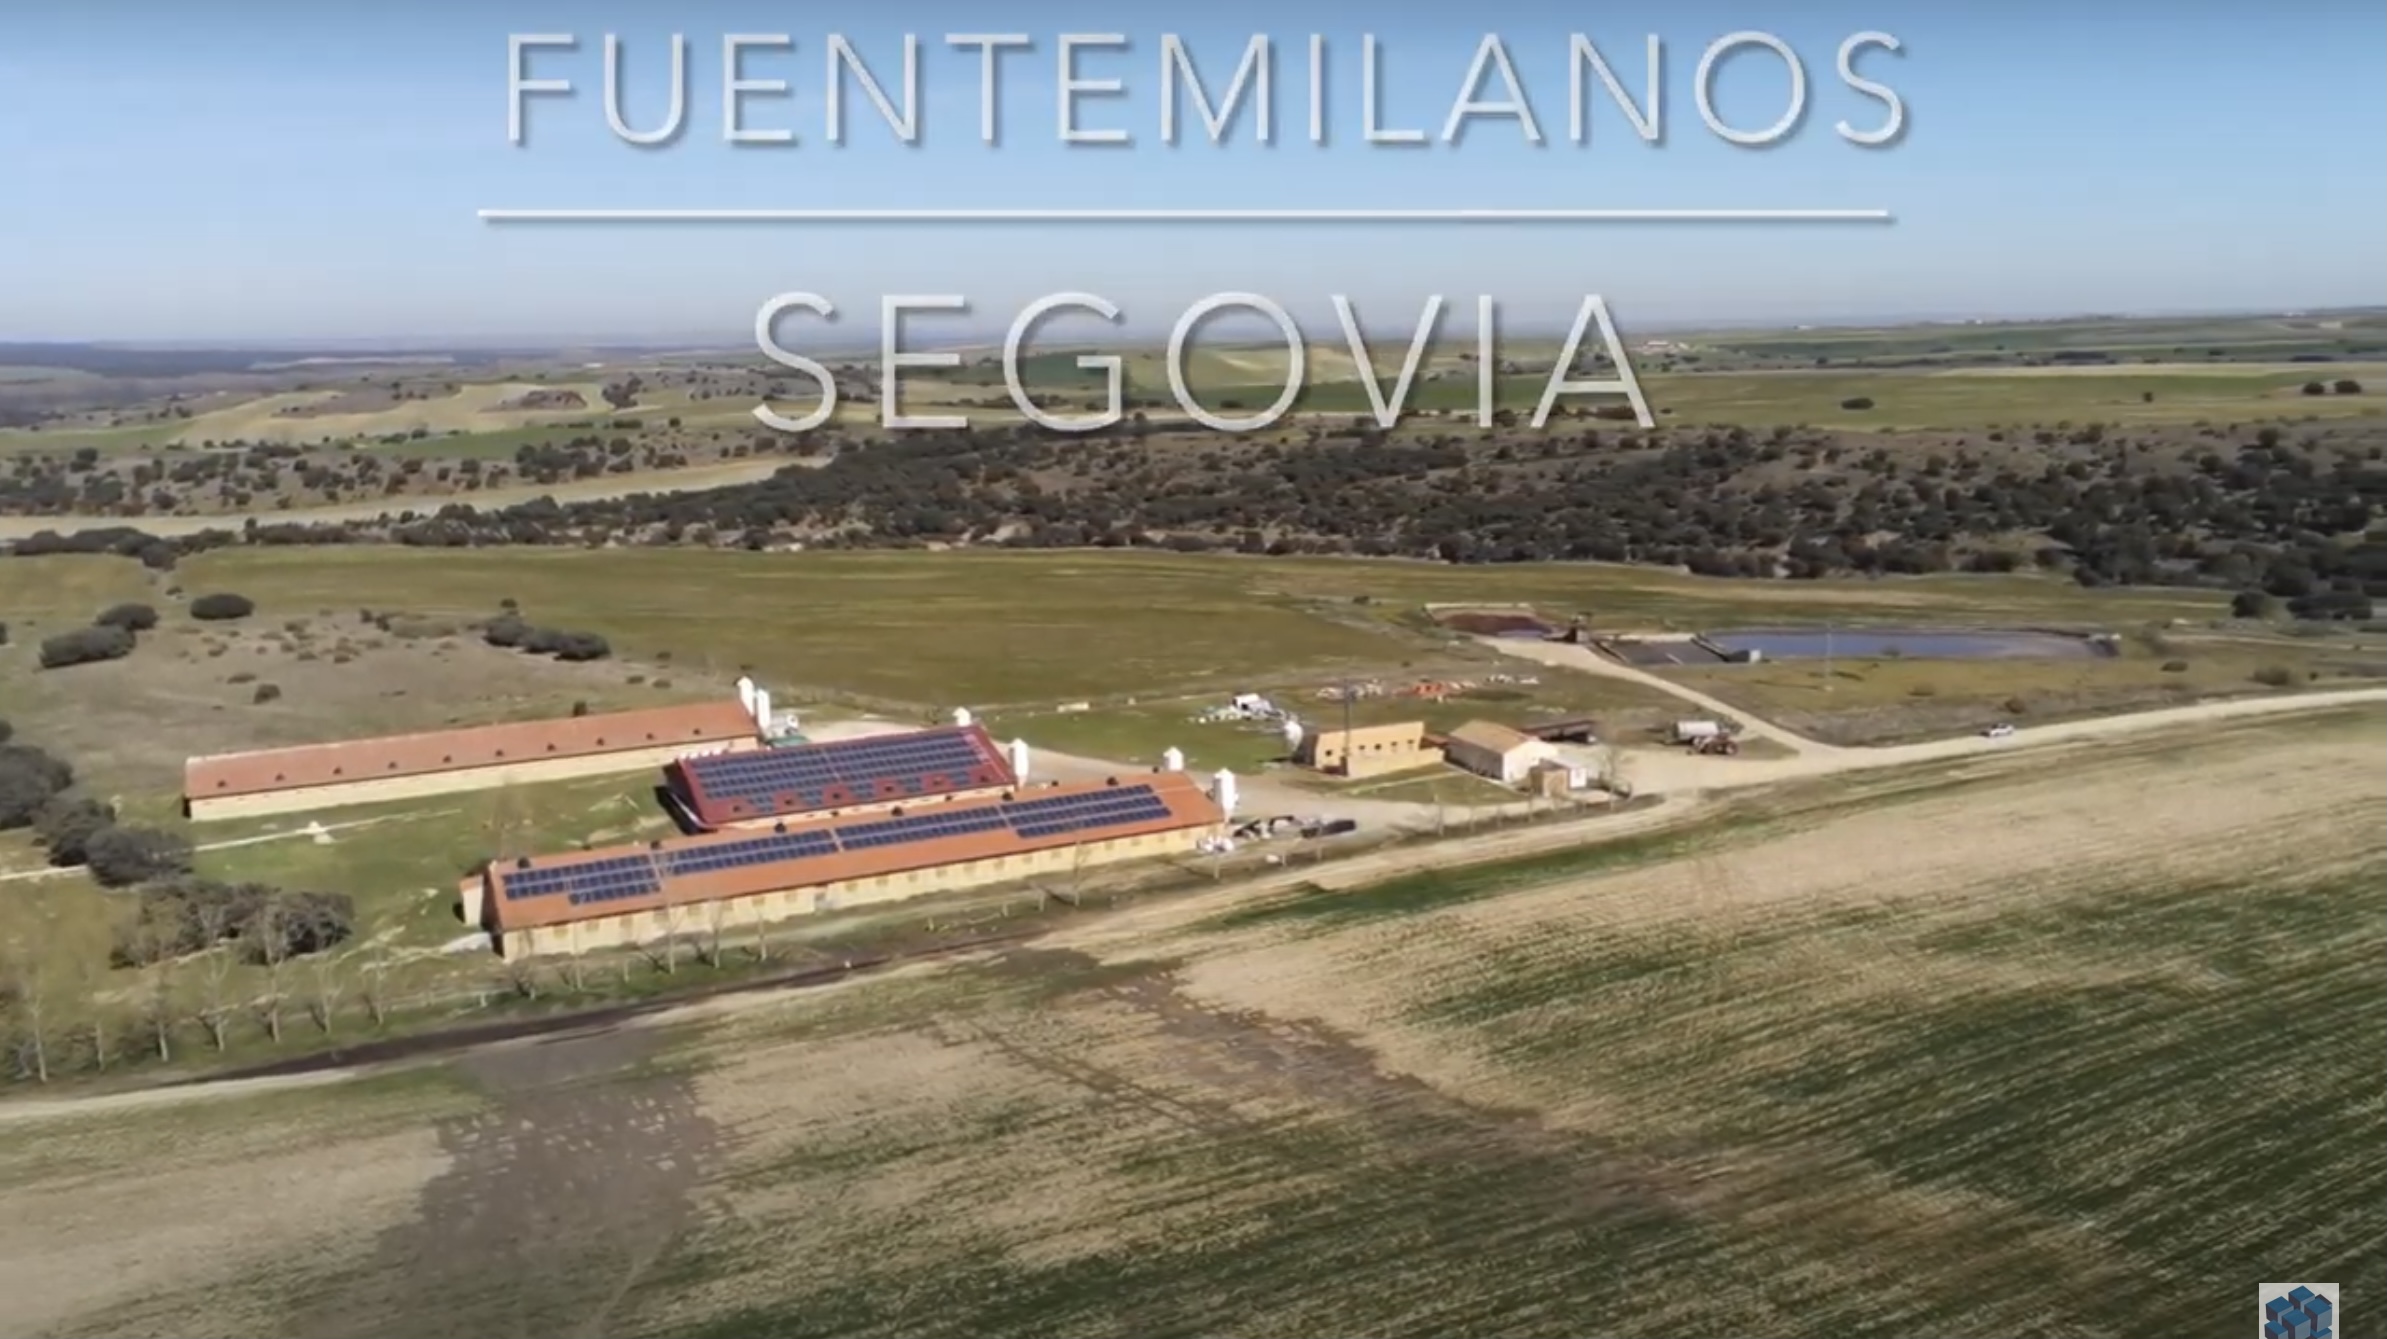 Instalación de autoconsumo granja porcino Fuentemilanos, Segovia